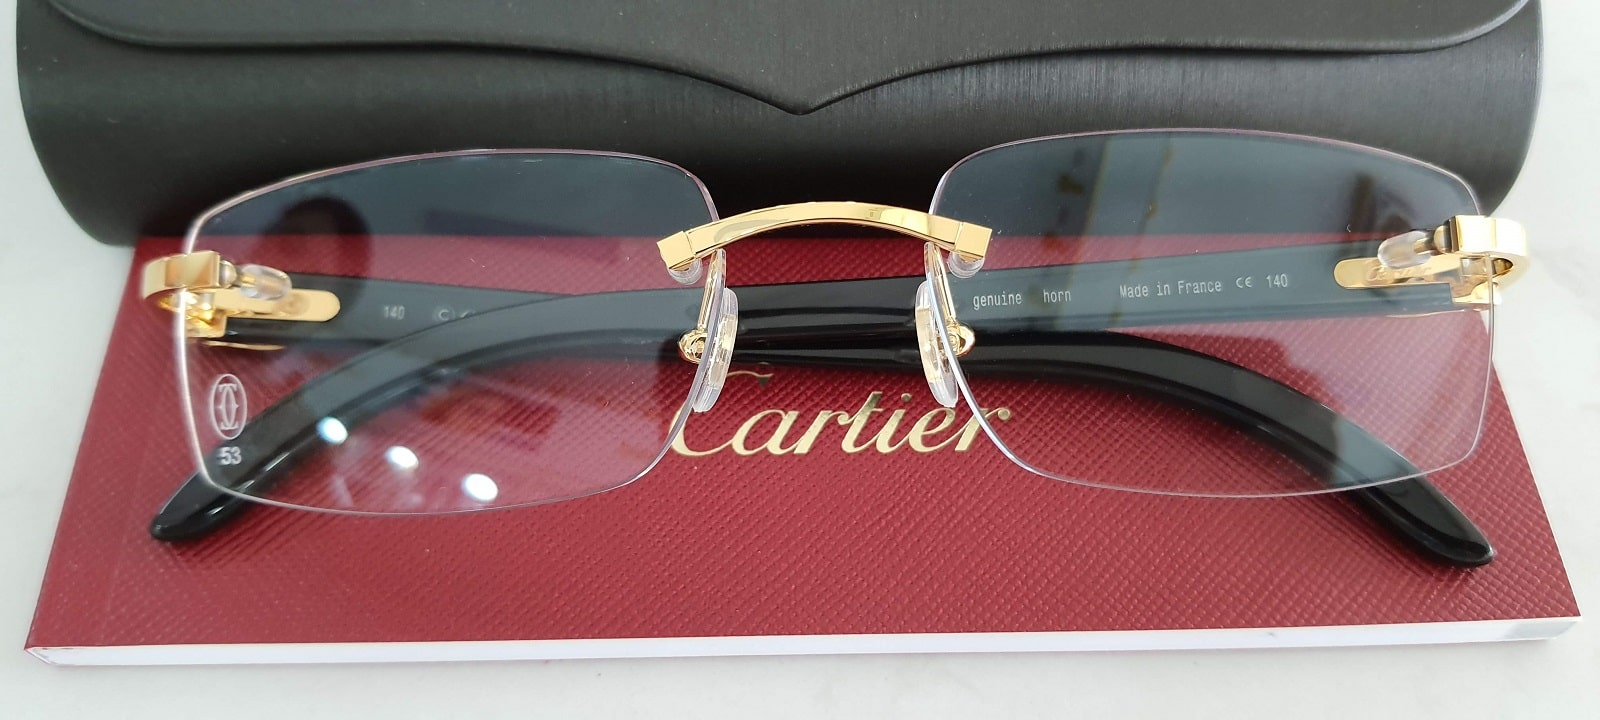 VIP06: gọng kính 3 mảnh Cartier genuine horn CT00490 001 bọc vàng càng làm  từ sừng trâu nam phi Made In France FULL BOX - Sài Thành Kính Cổ